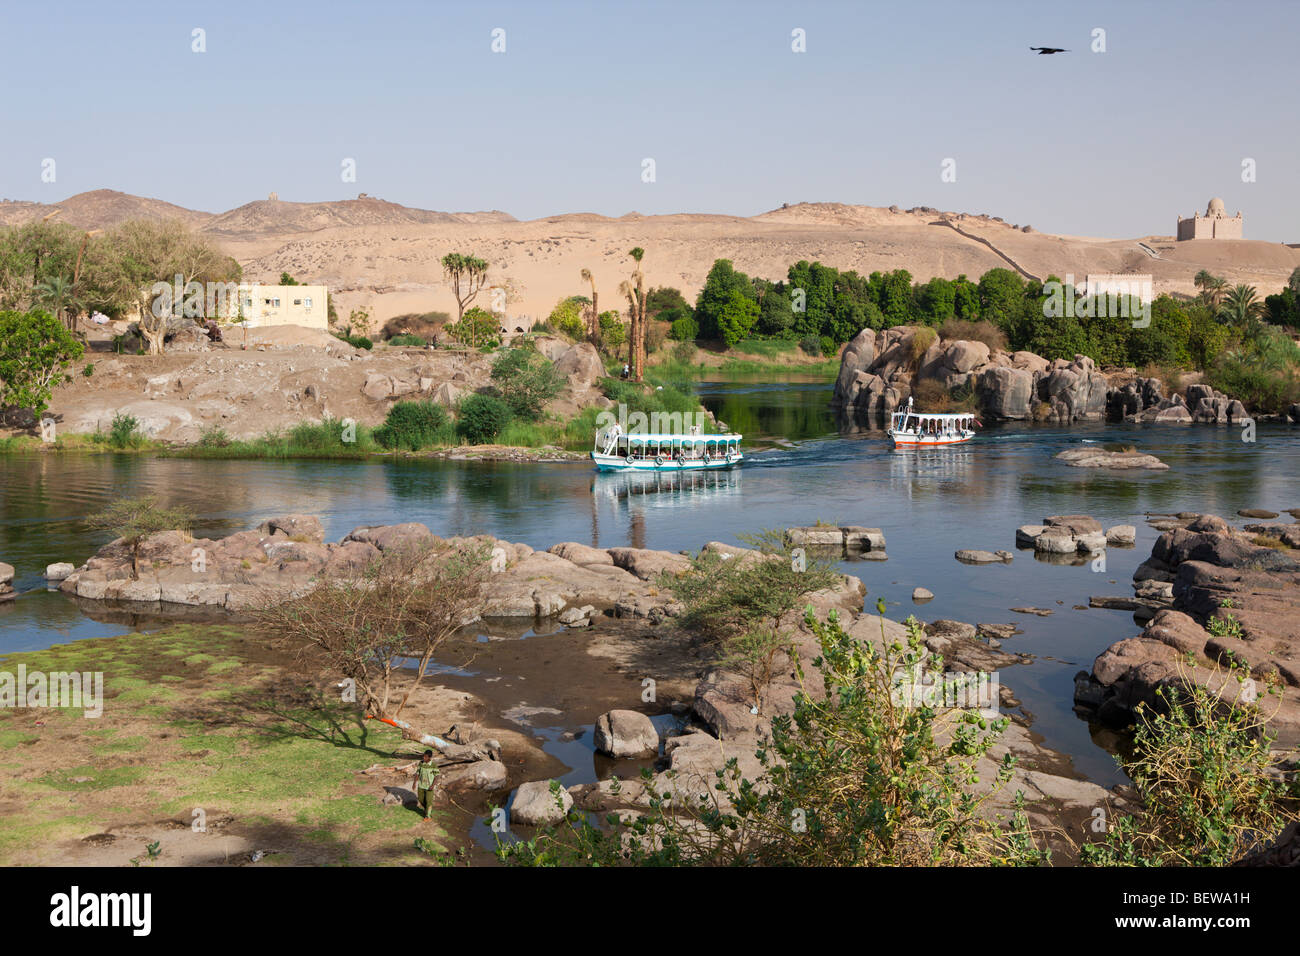 La cataracte du Nil, Assouan, Egypte Banque D'Images